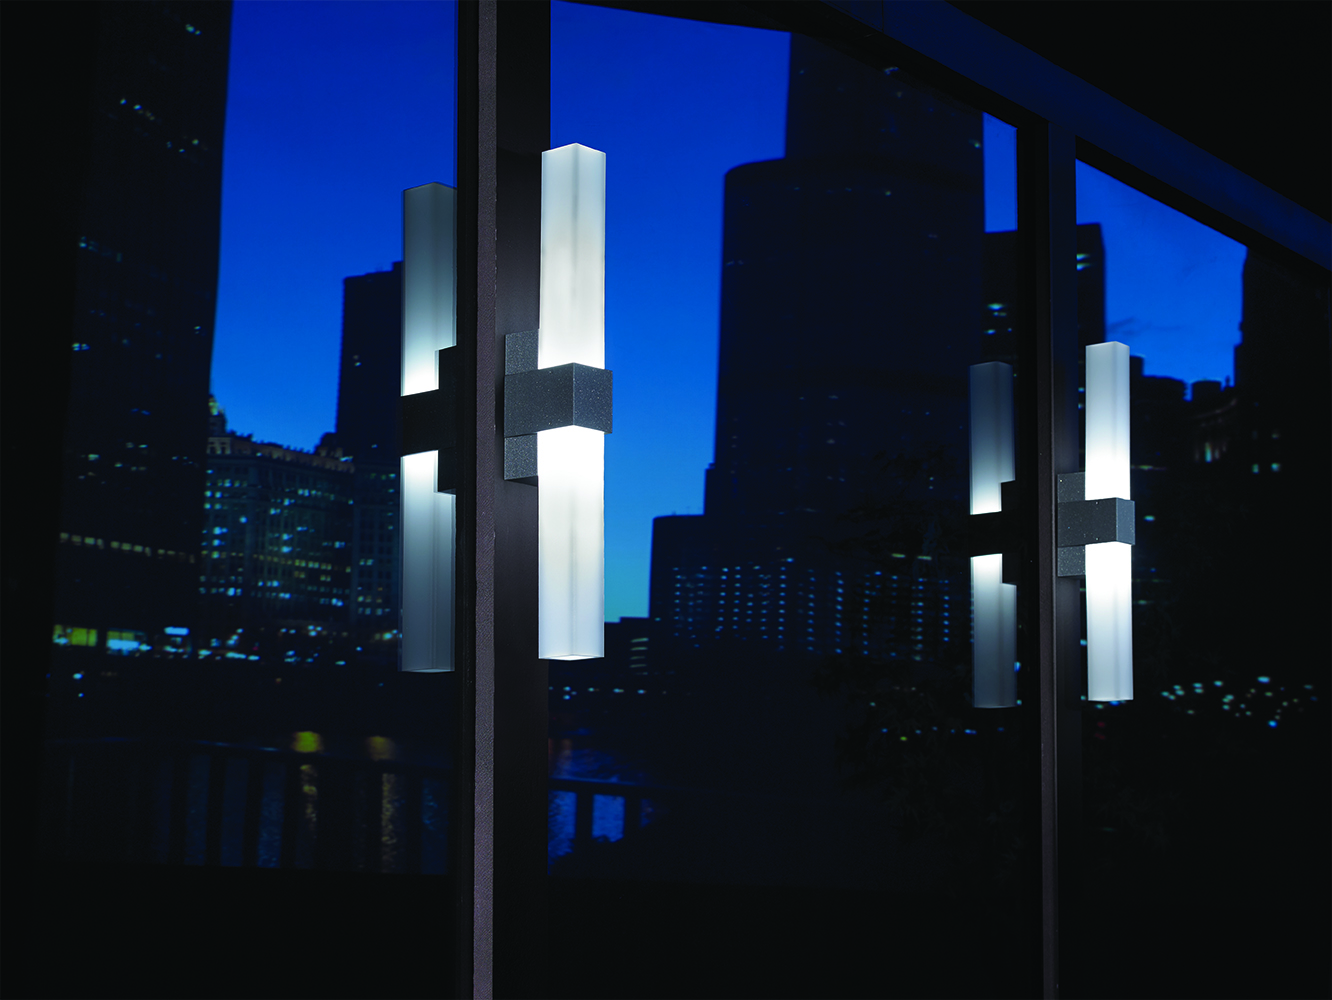 SASS exterior lighting fixtures between large windows at night, reflecting city buildings.